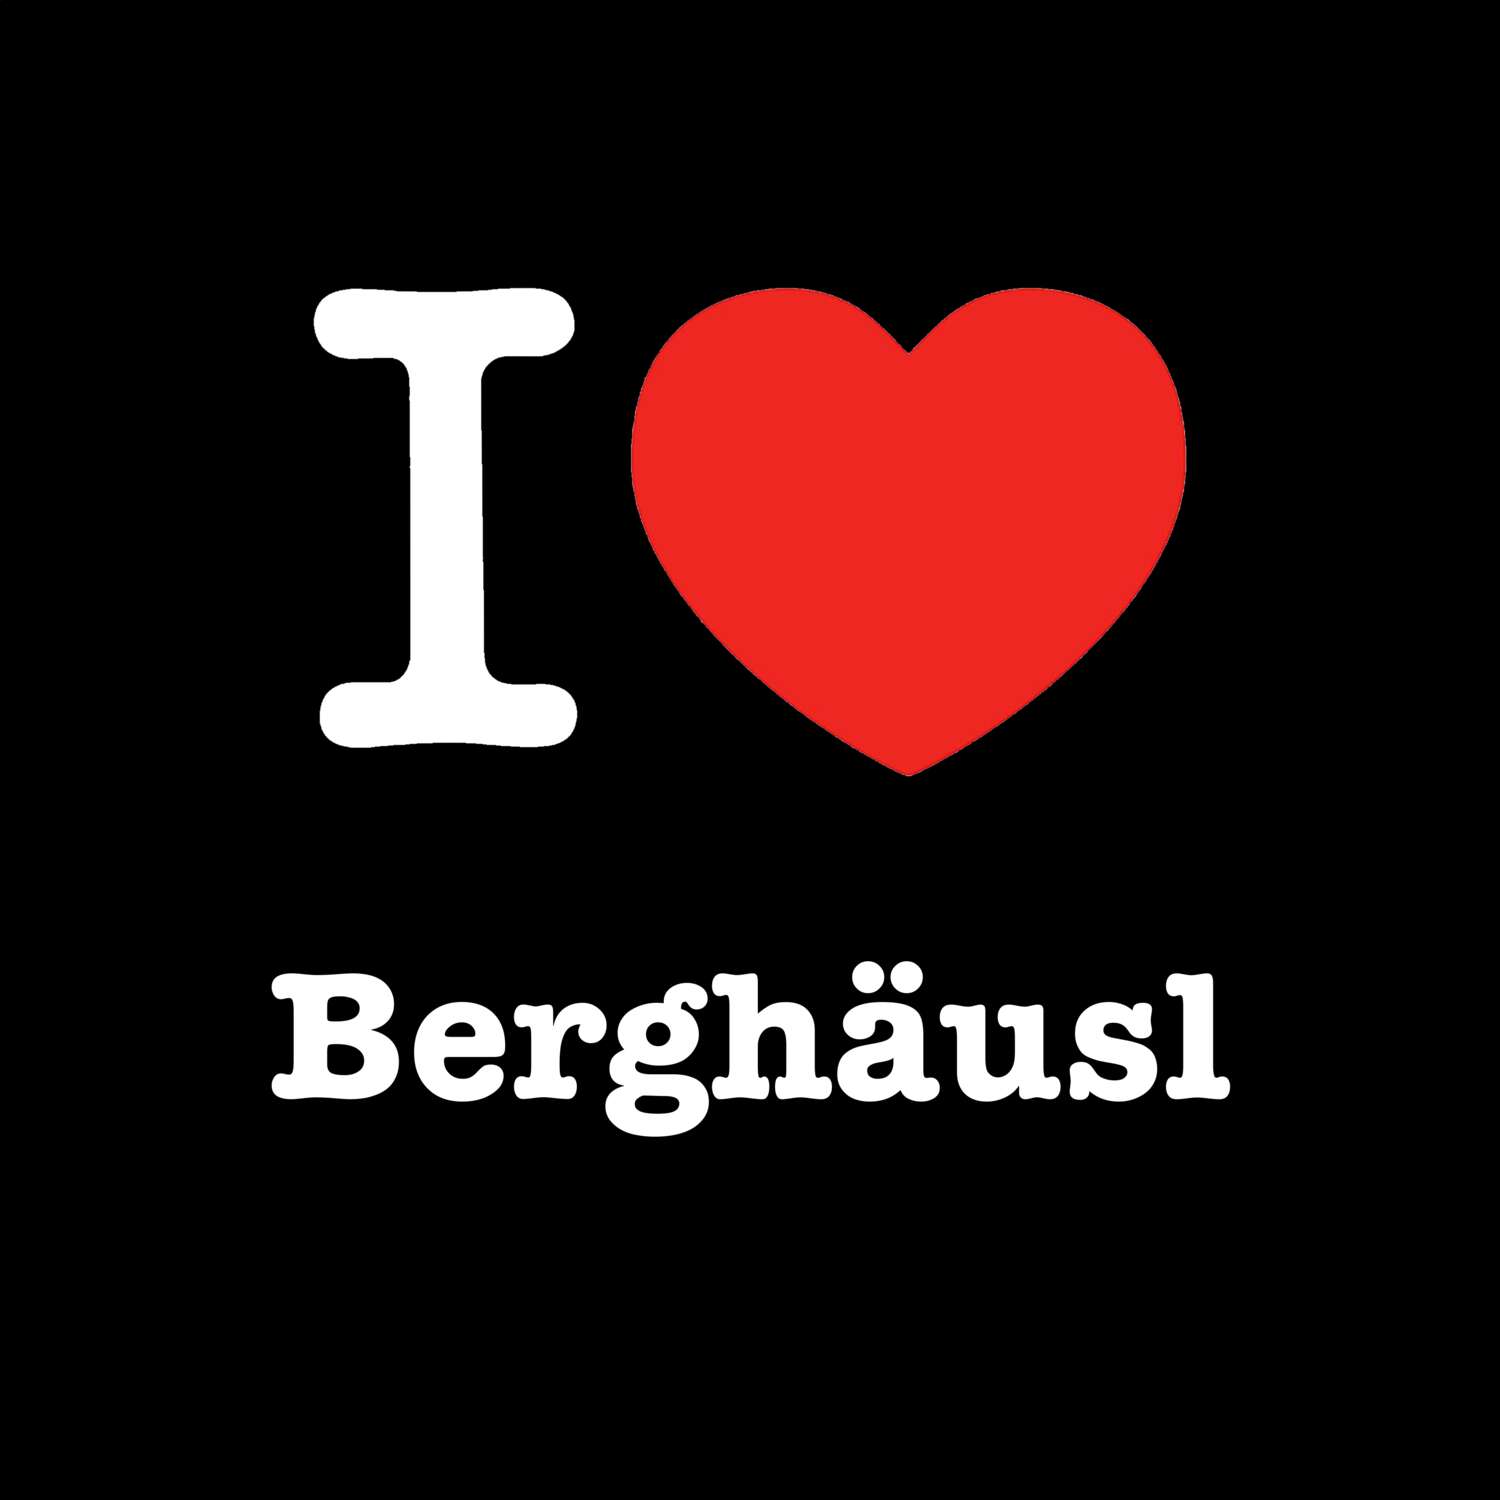 Berghäusl T-Shirt »I love«